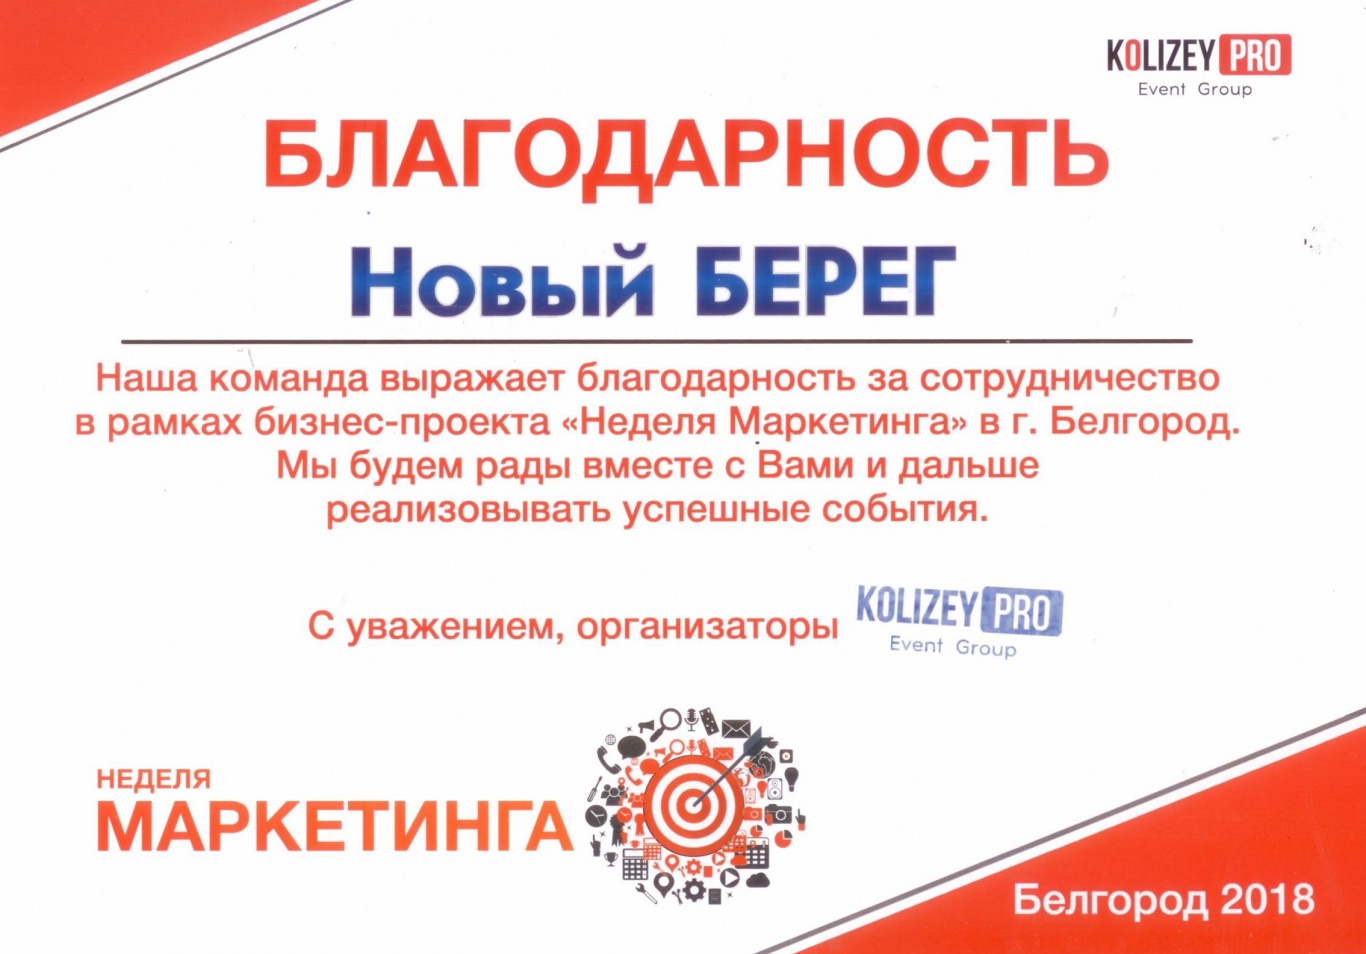 Благодарность KOLIZEY PRO за сотрудничество в рамках бизнес-проекта "Неделя Маркетинга" в Белгороде